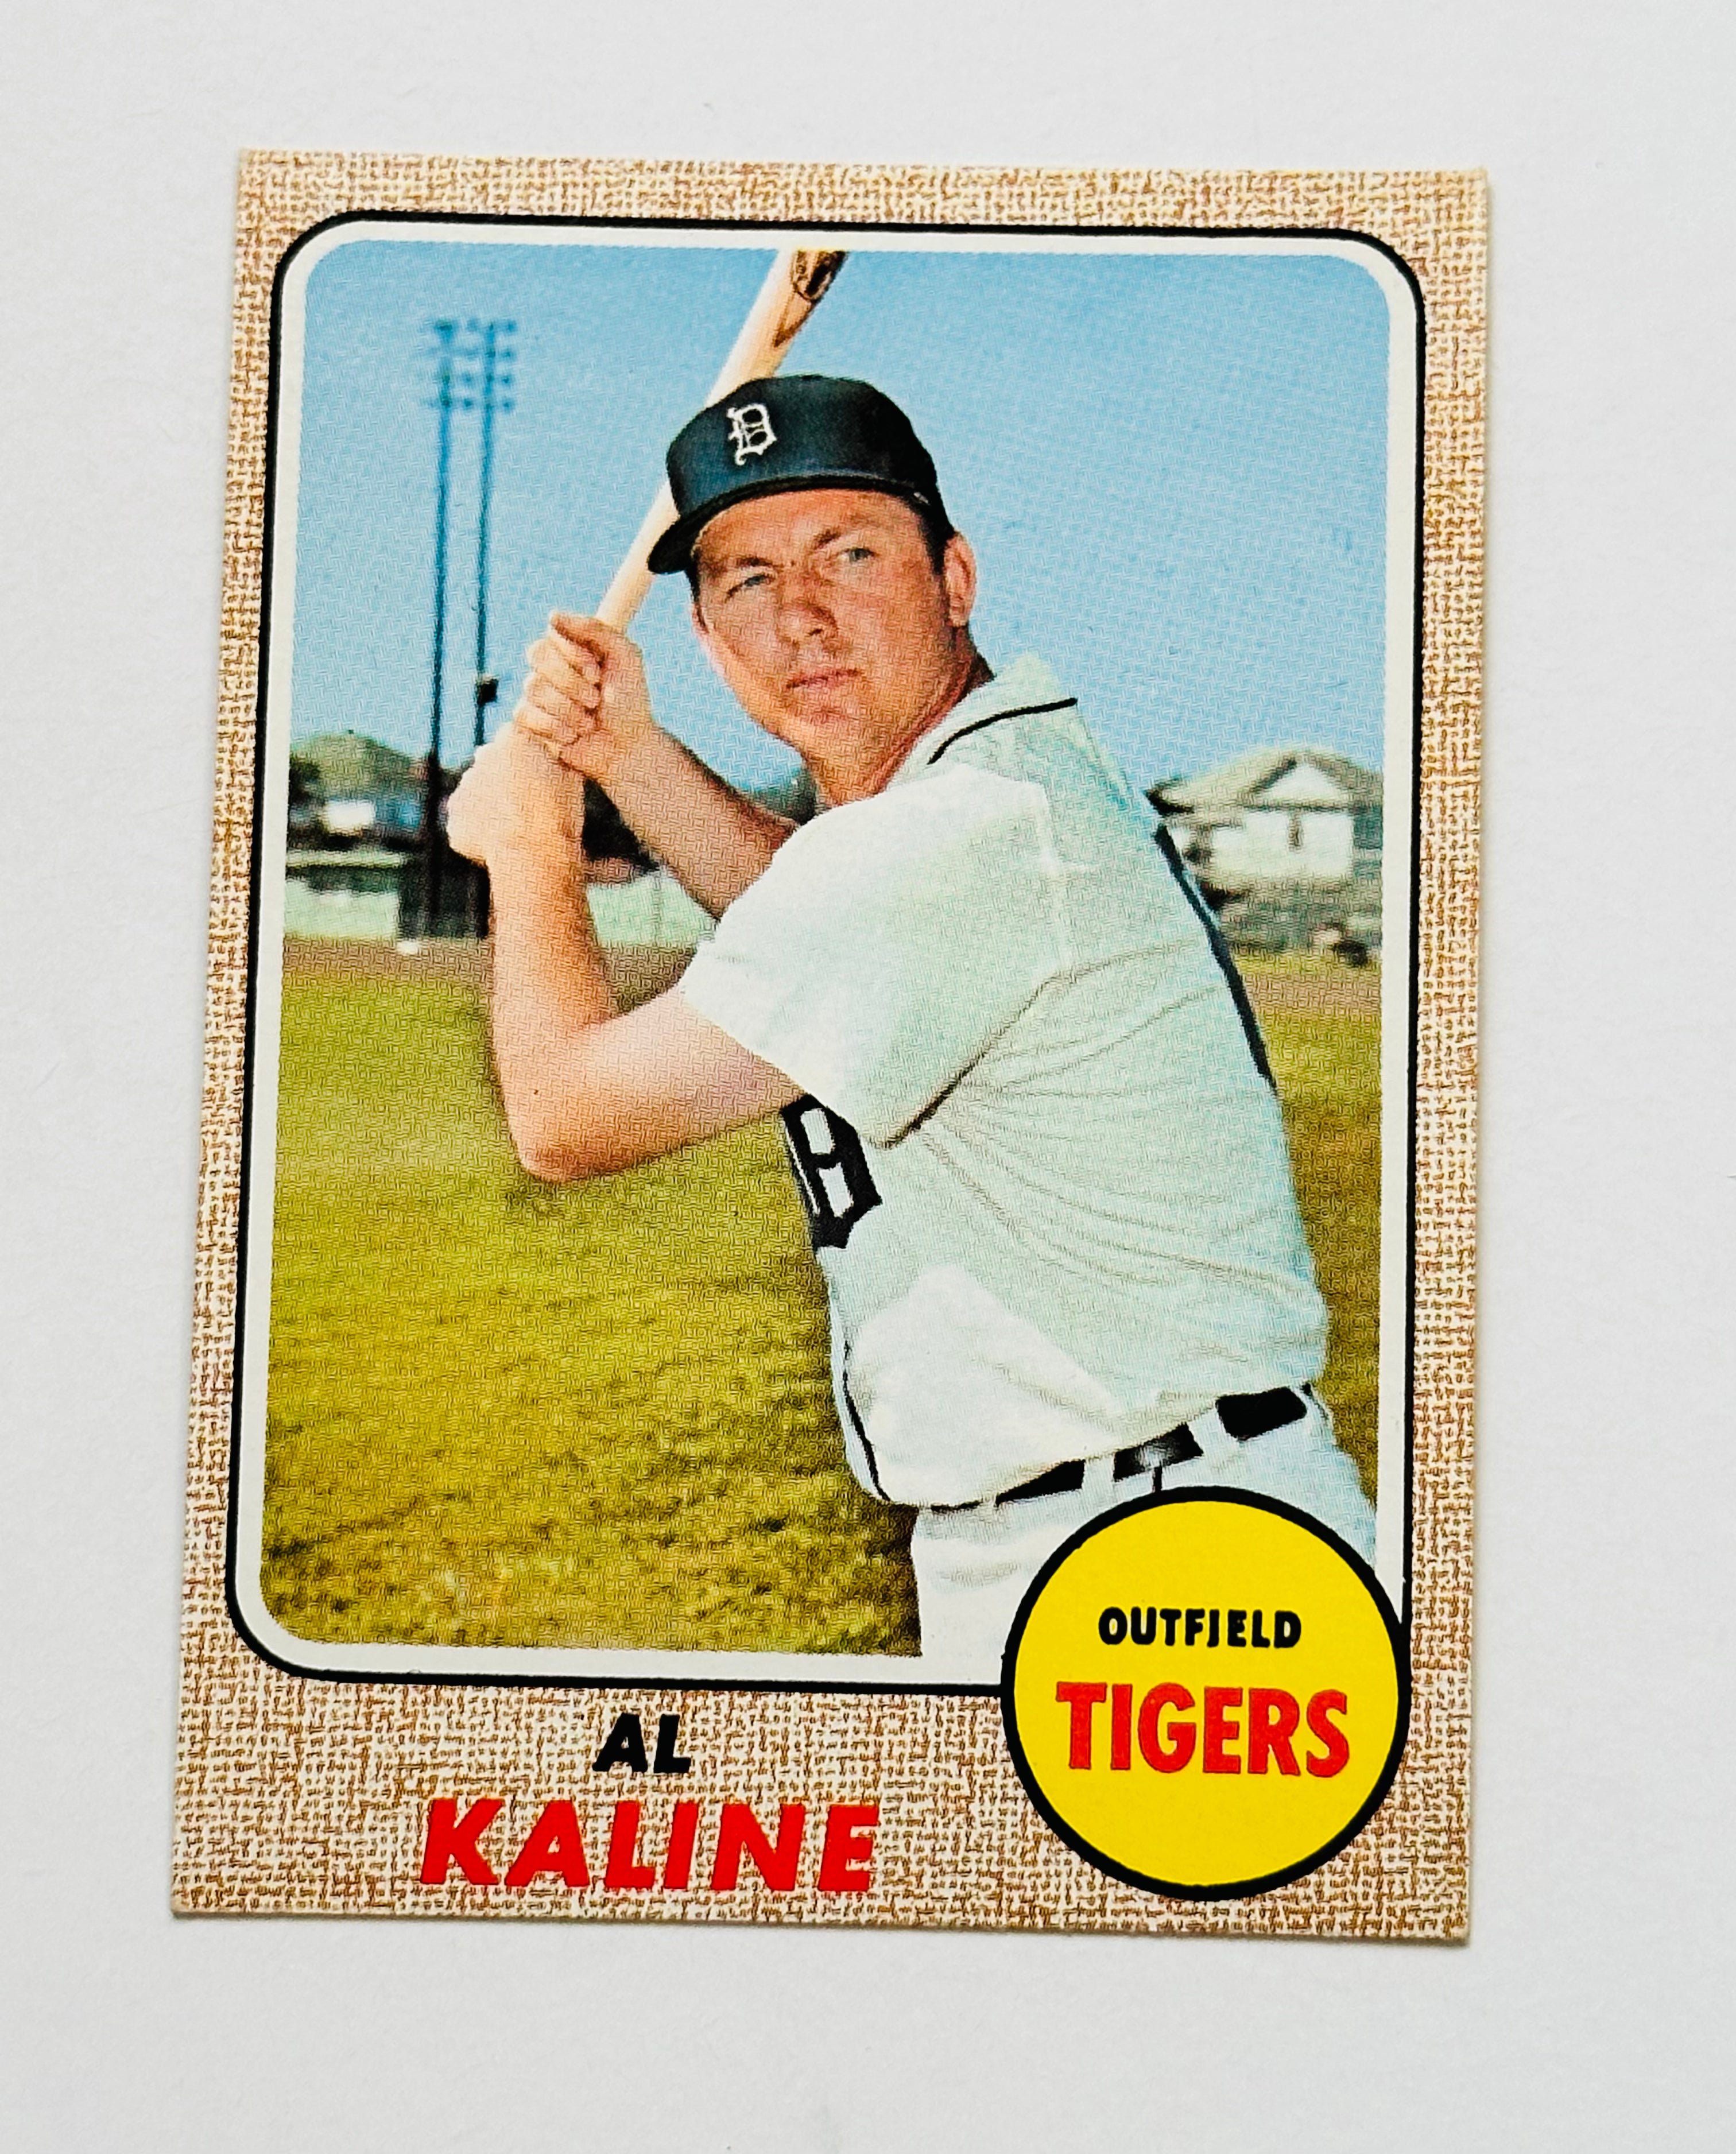 1968 Topps Al Kaline high grade condition NM baseball card